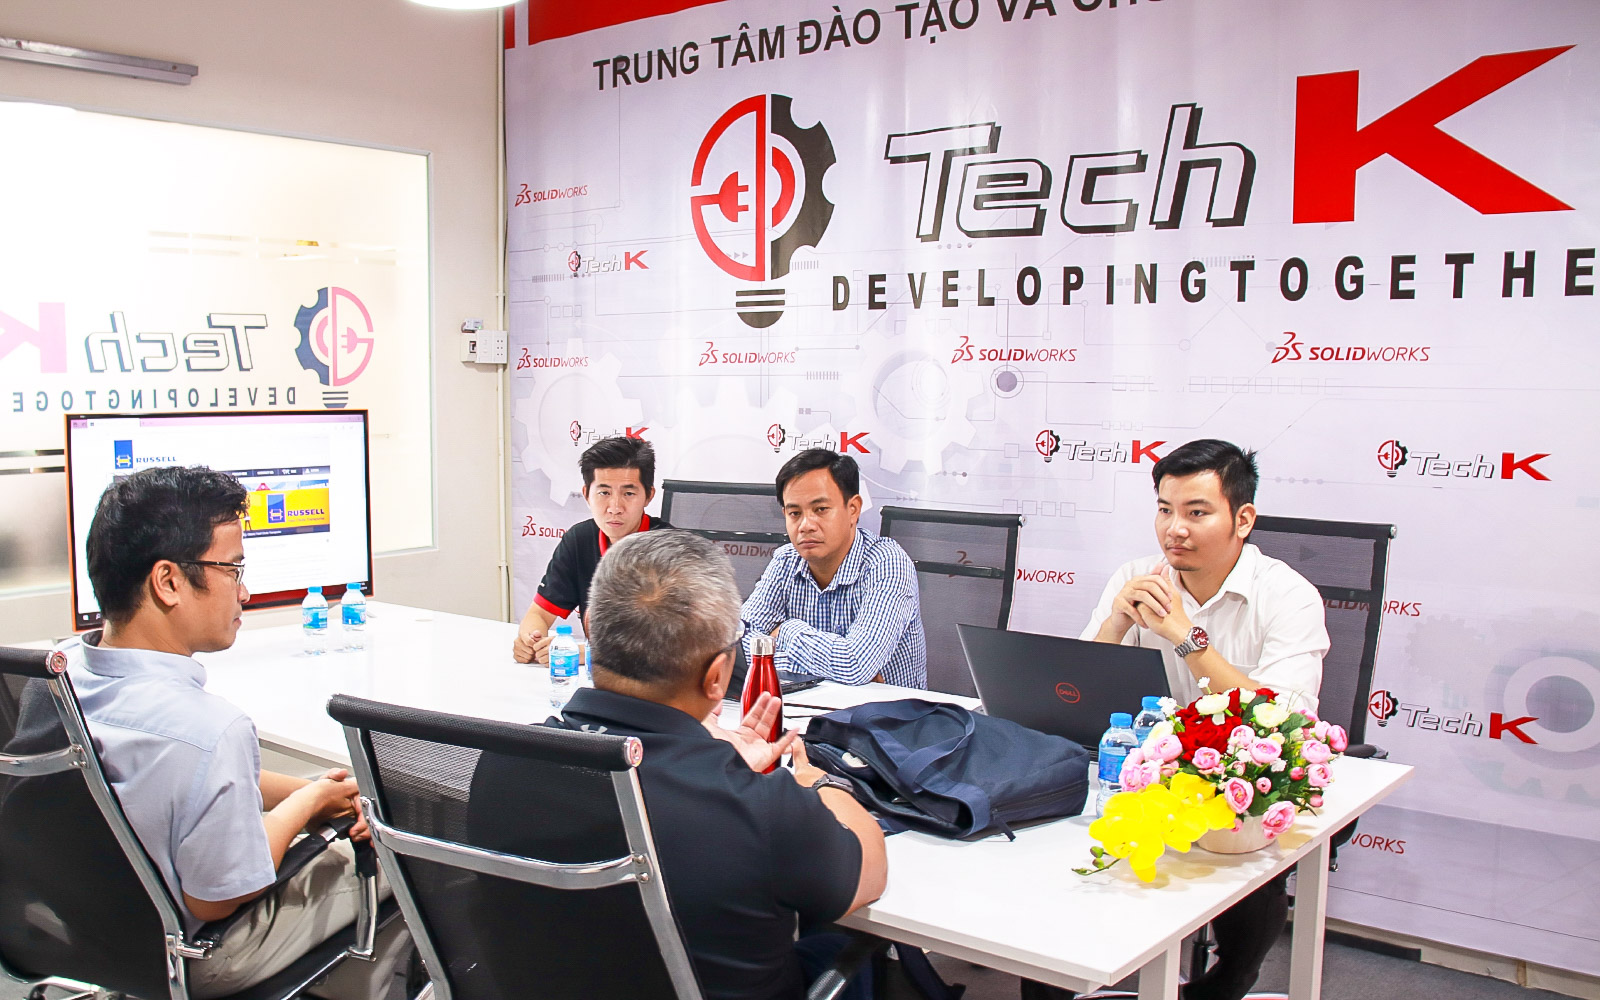  Ông Phan Bá Thông và TechK trao đổi về kỹ thuật của phần mềm SolidWorks